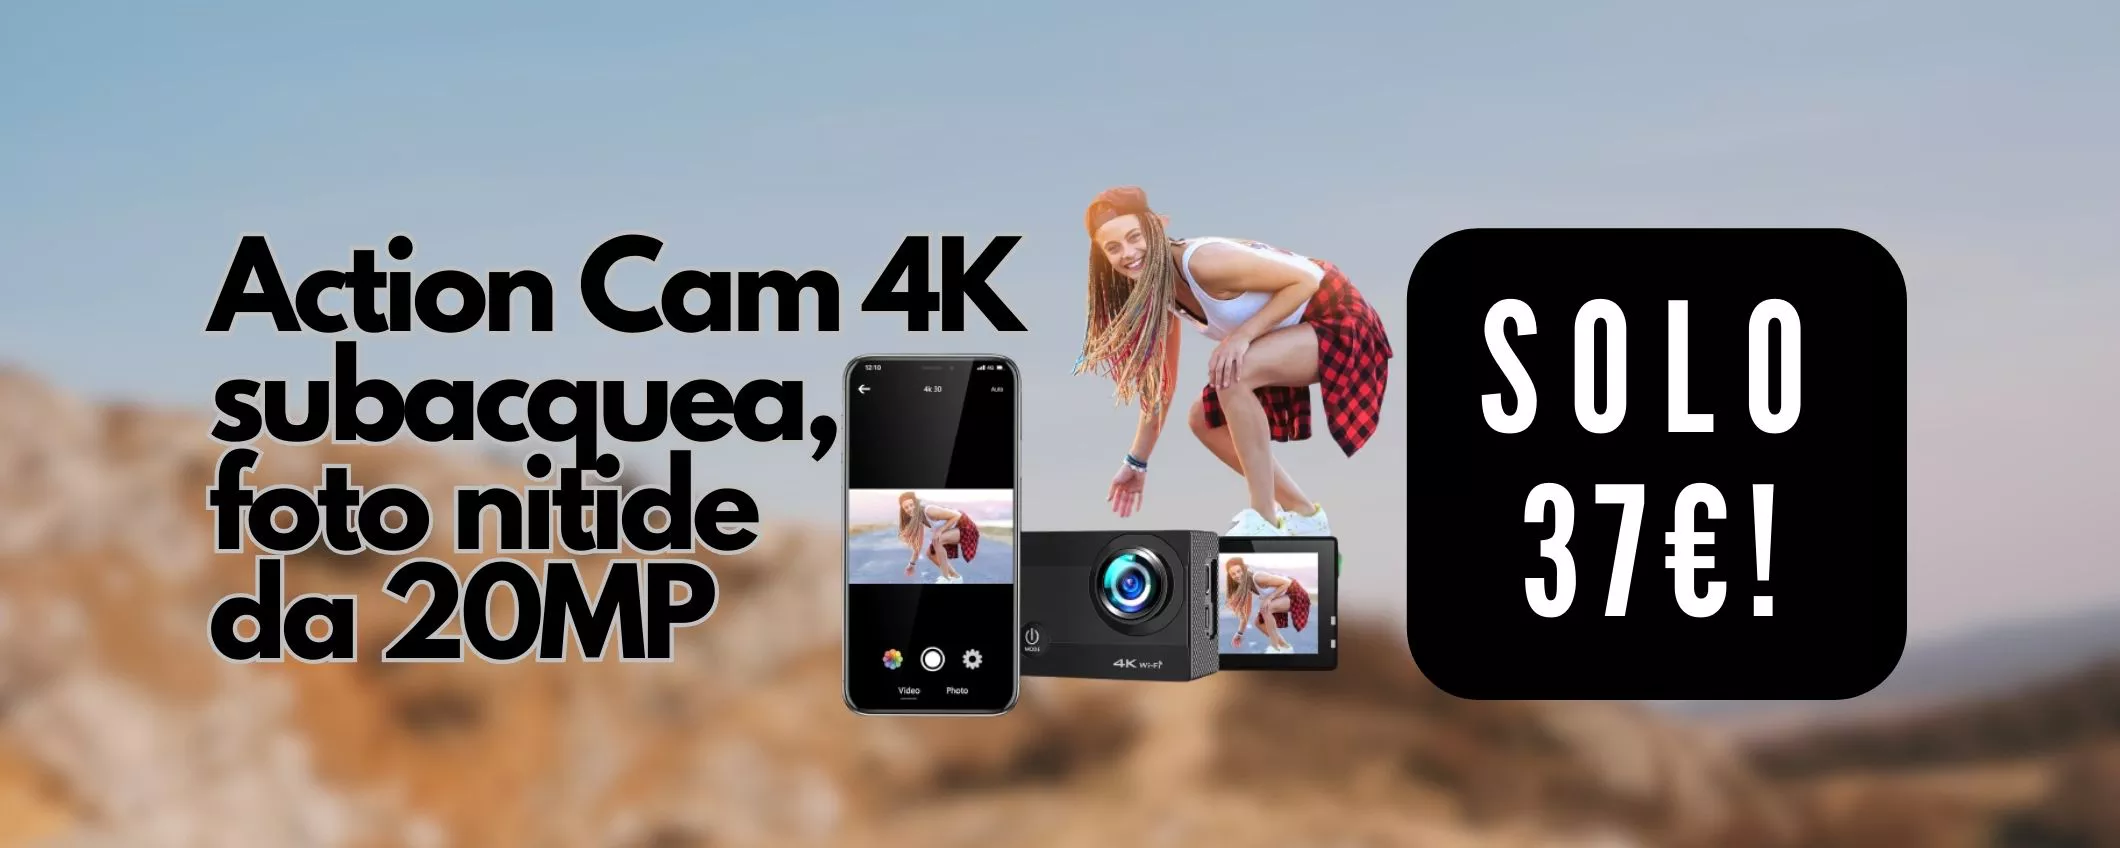 Action Cam 4K subacquea con schermo touch: Amazon fa la PAZZIA e la regala (37€)